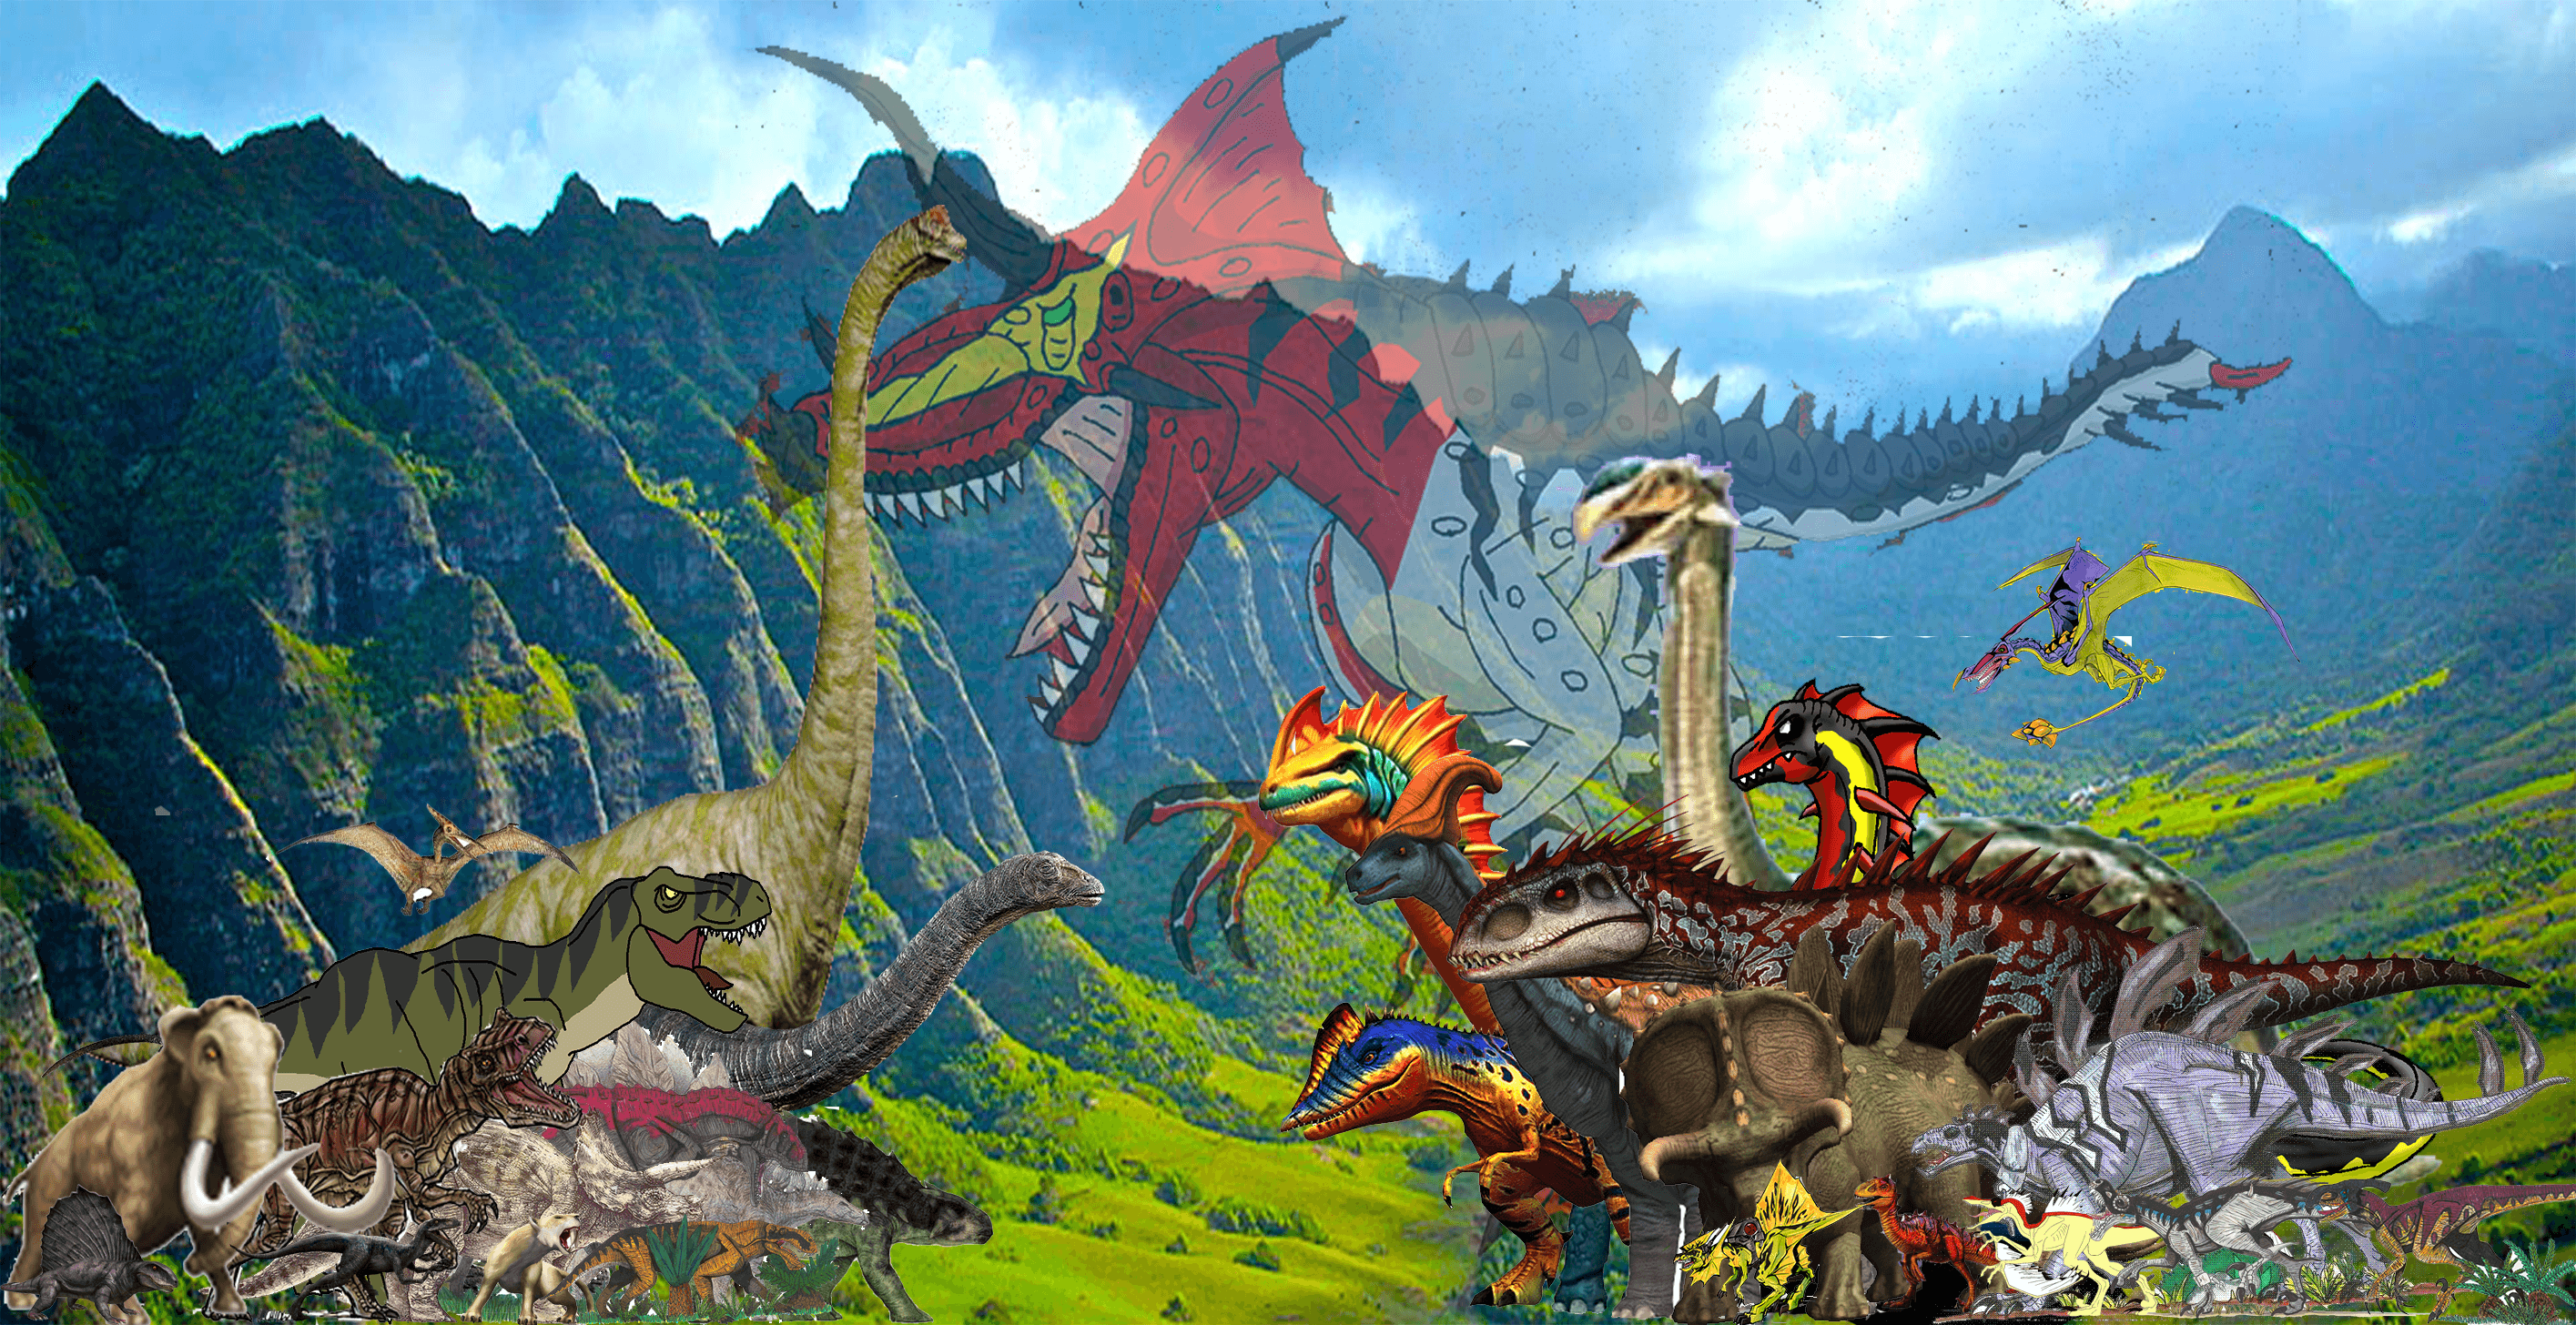 Jurassic World Fallen Kingdom by ninjakingofhearts